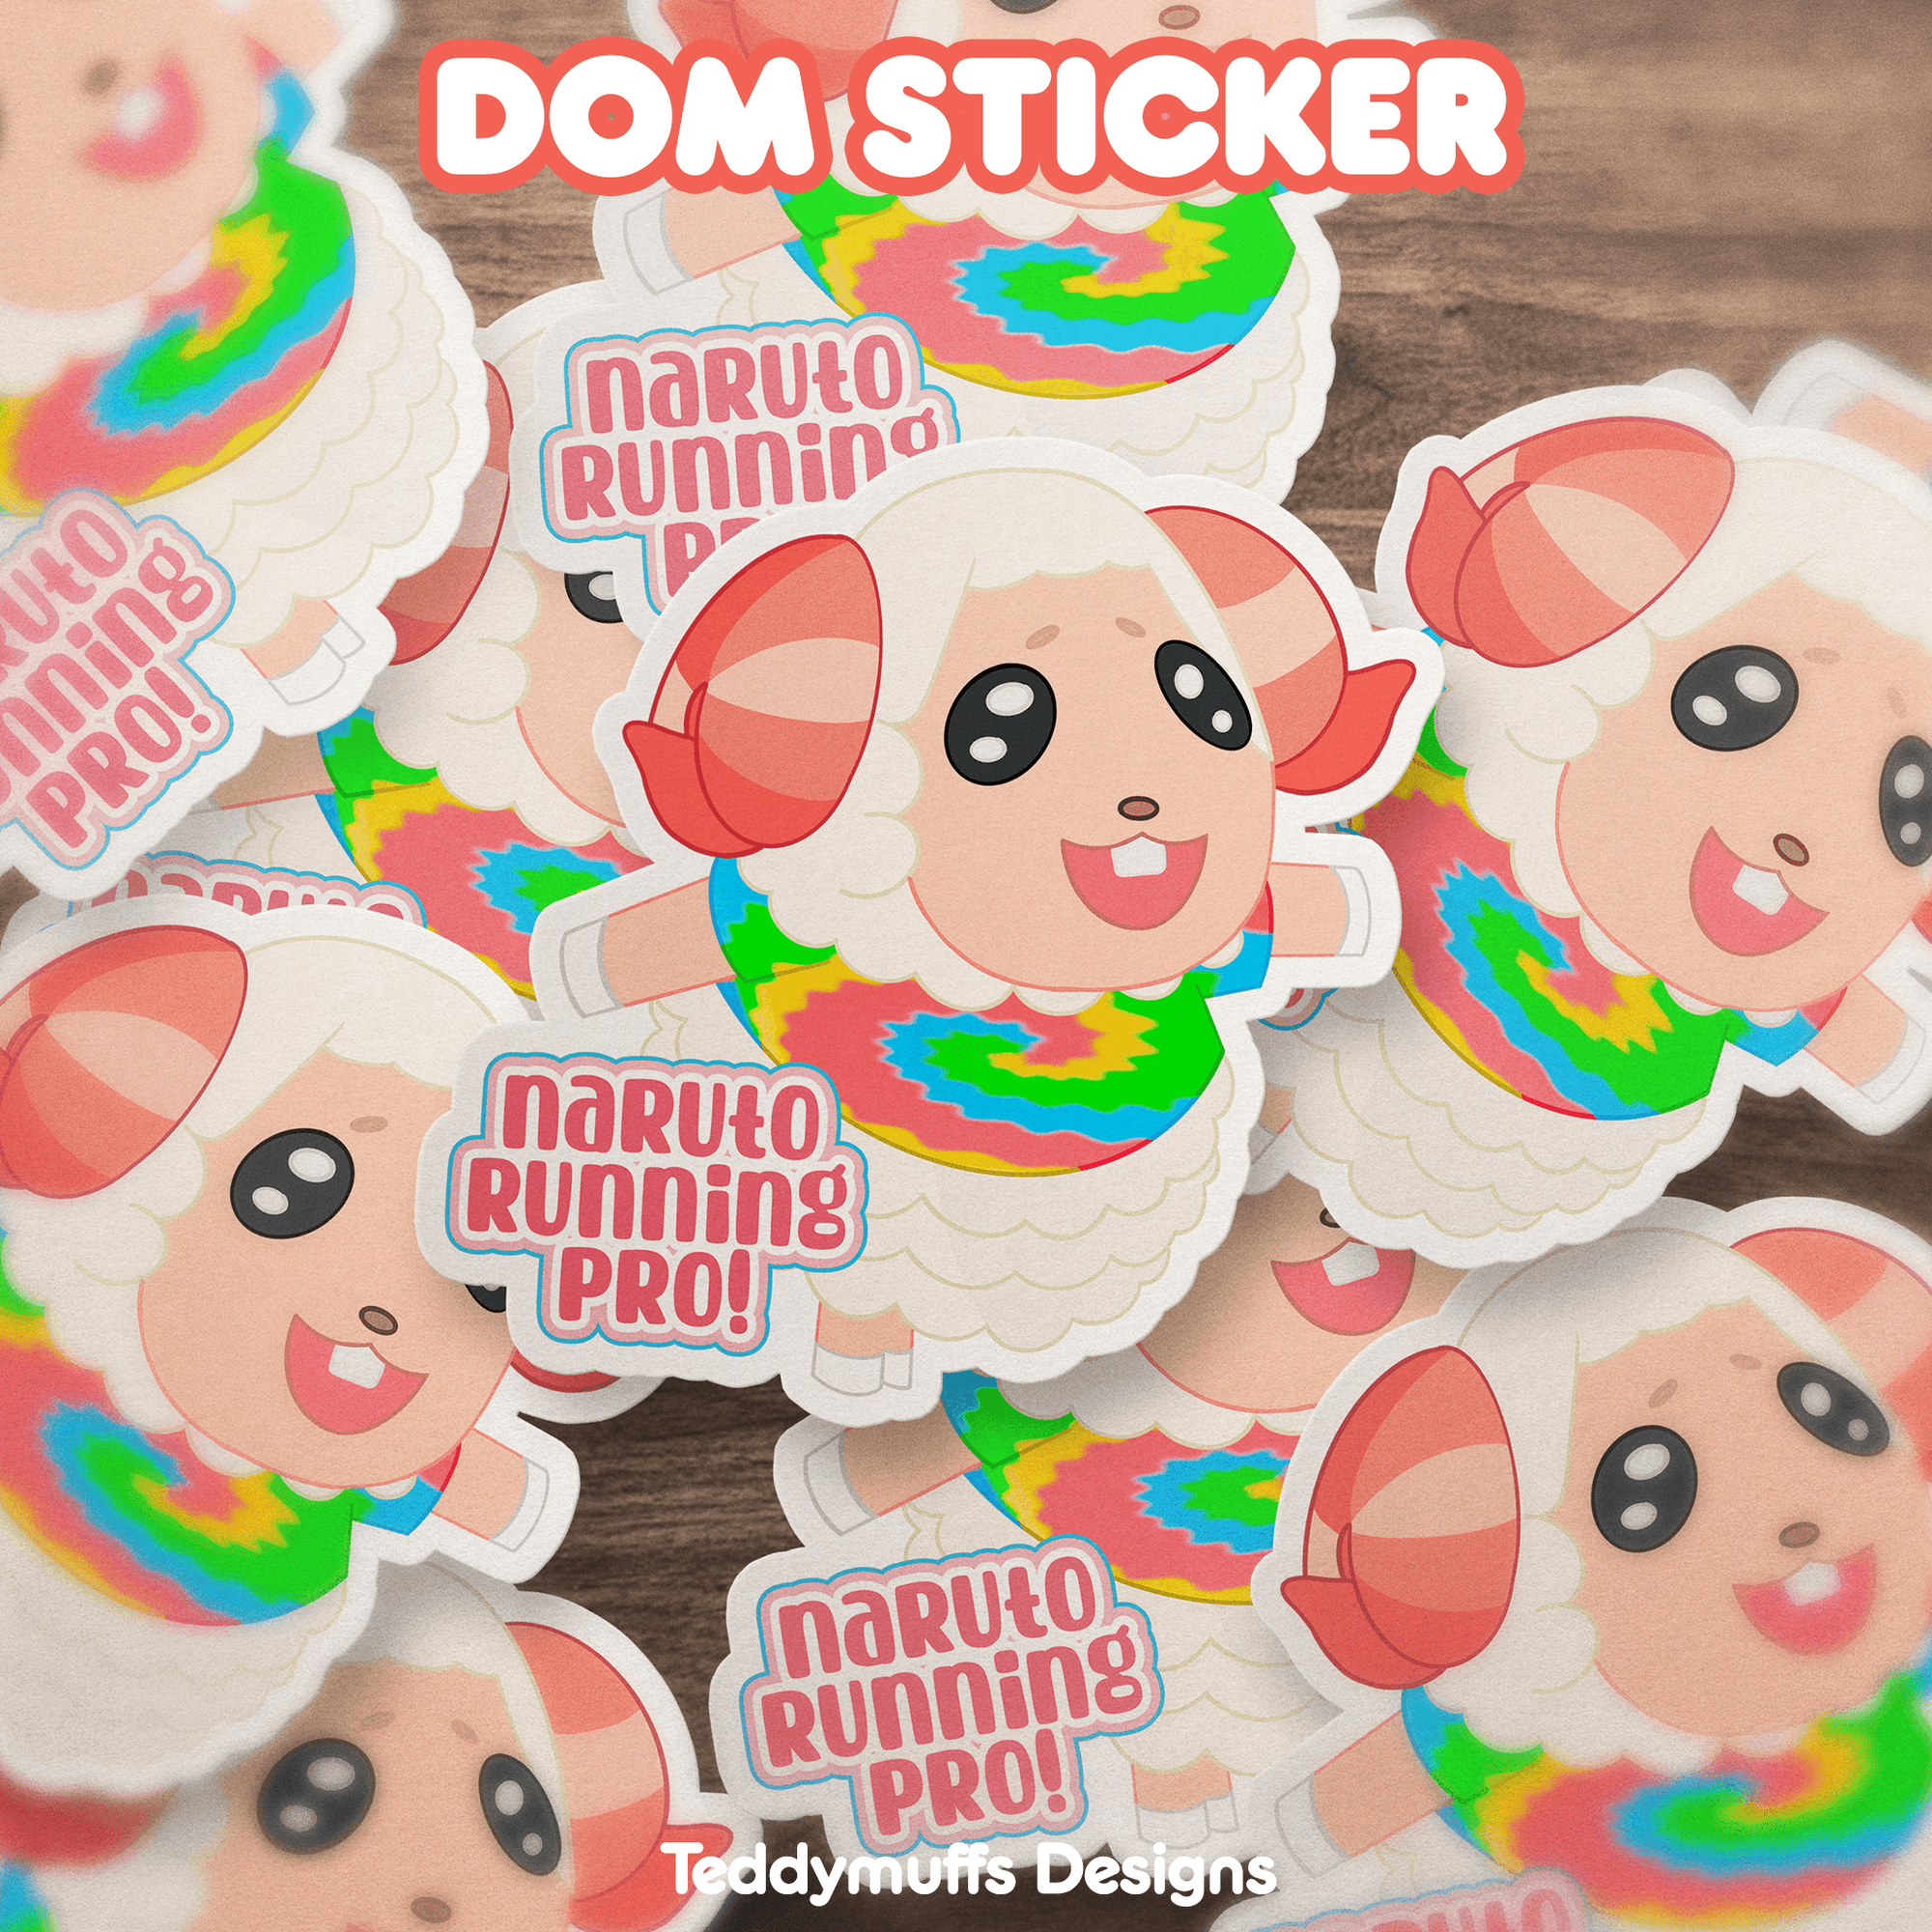 Dom "Pro Runner" Sticker - Teddymuffs Designs